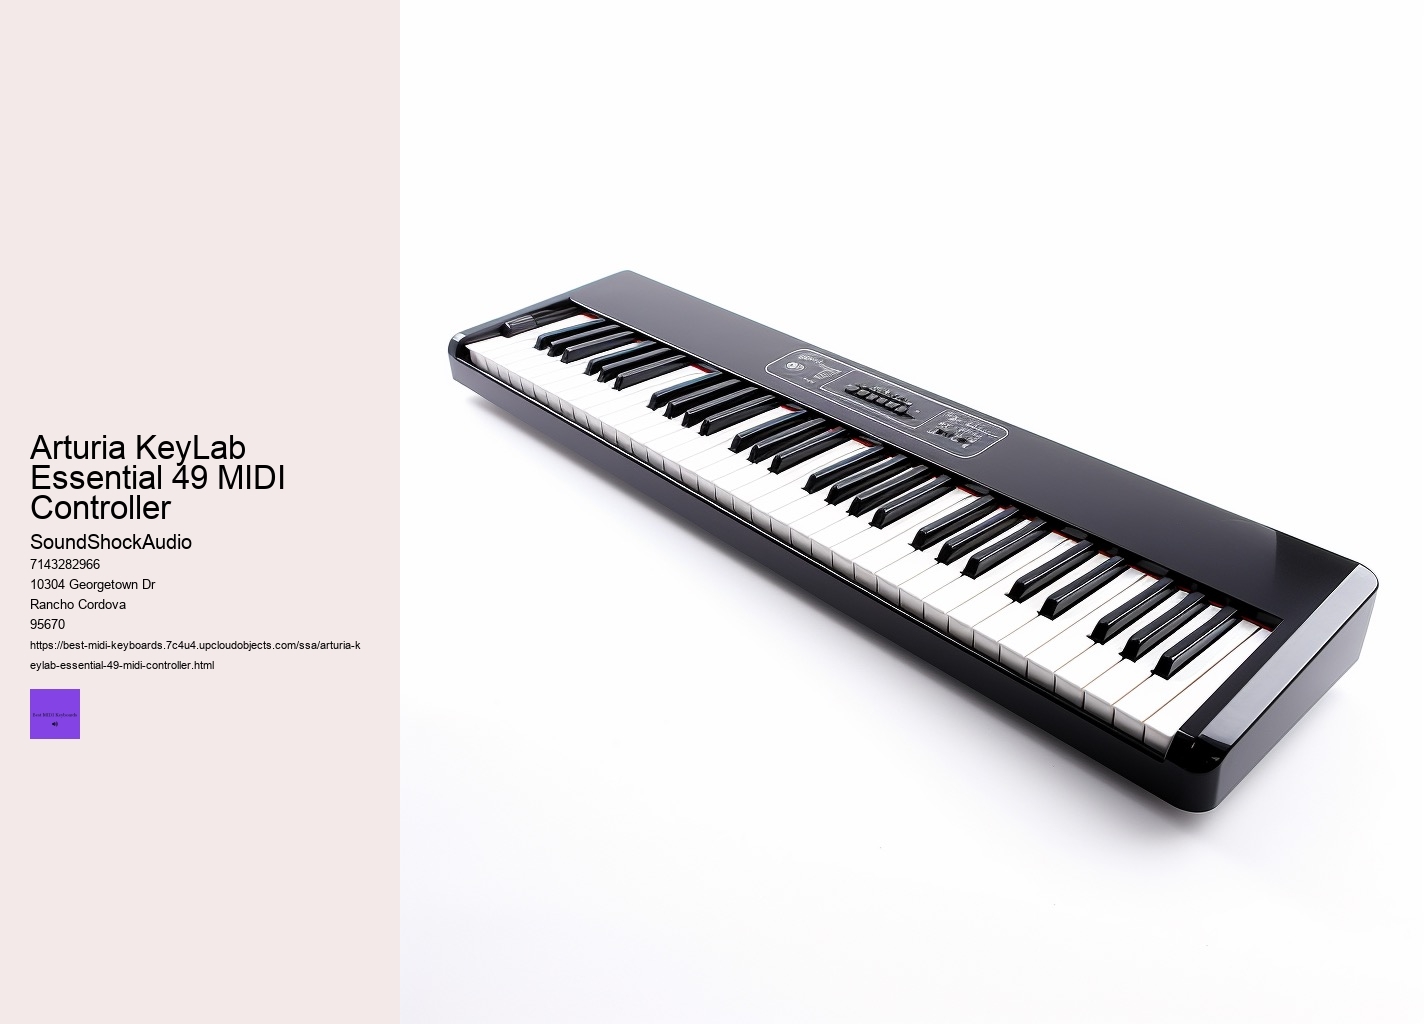 Arturia KeyLab Essential 49 MIDI Controller